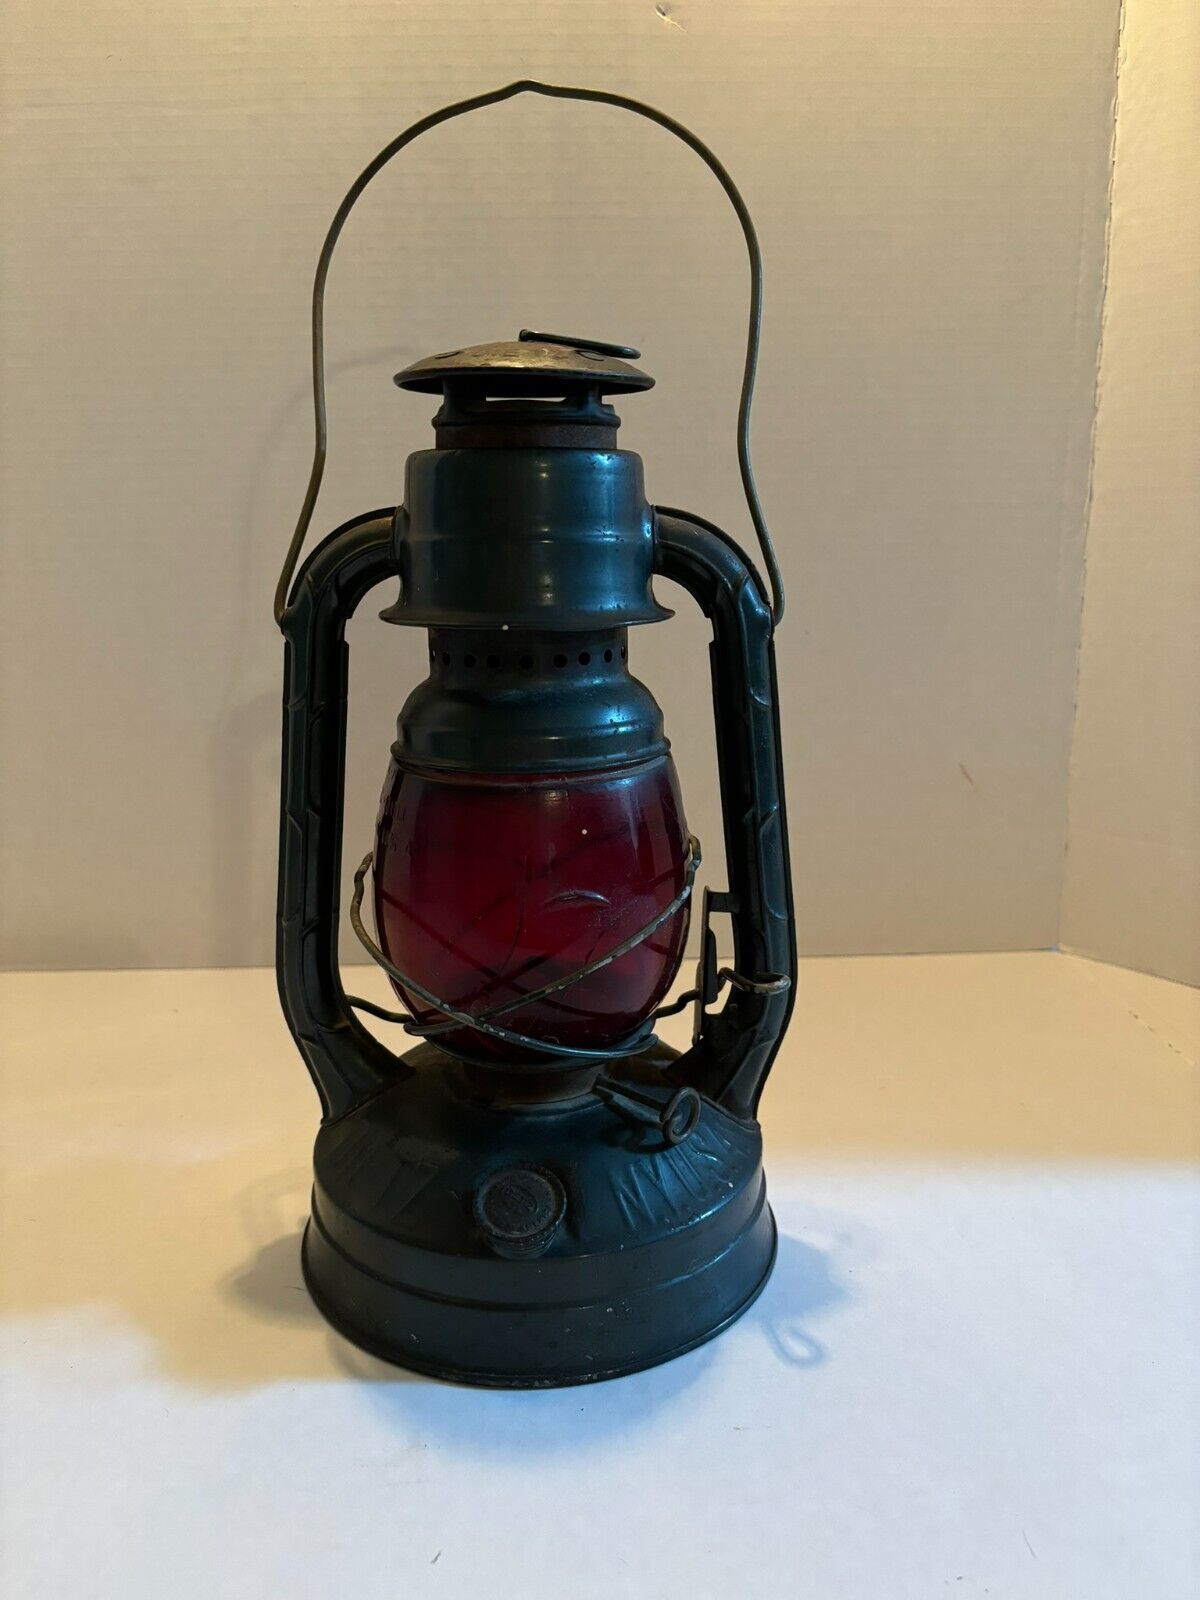 Vintage Dietz Little Wizard Railroad Lantern with Original Red Glass